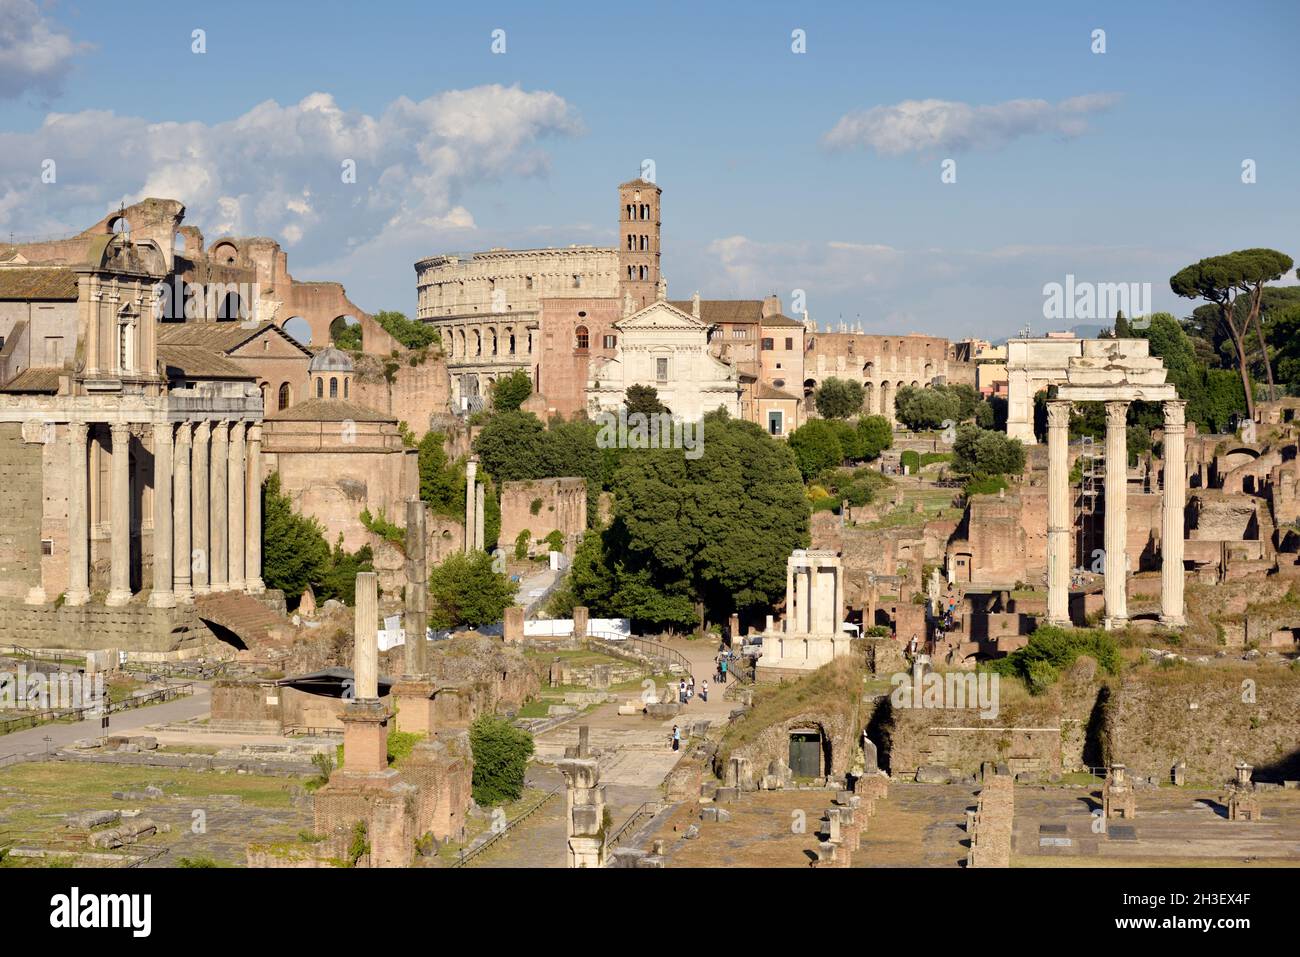 Italia, Roma, foro romano Foto de stock